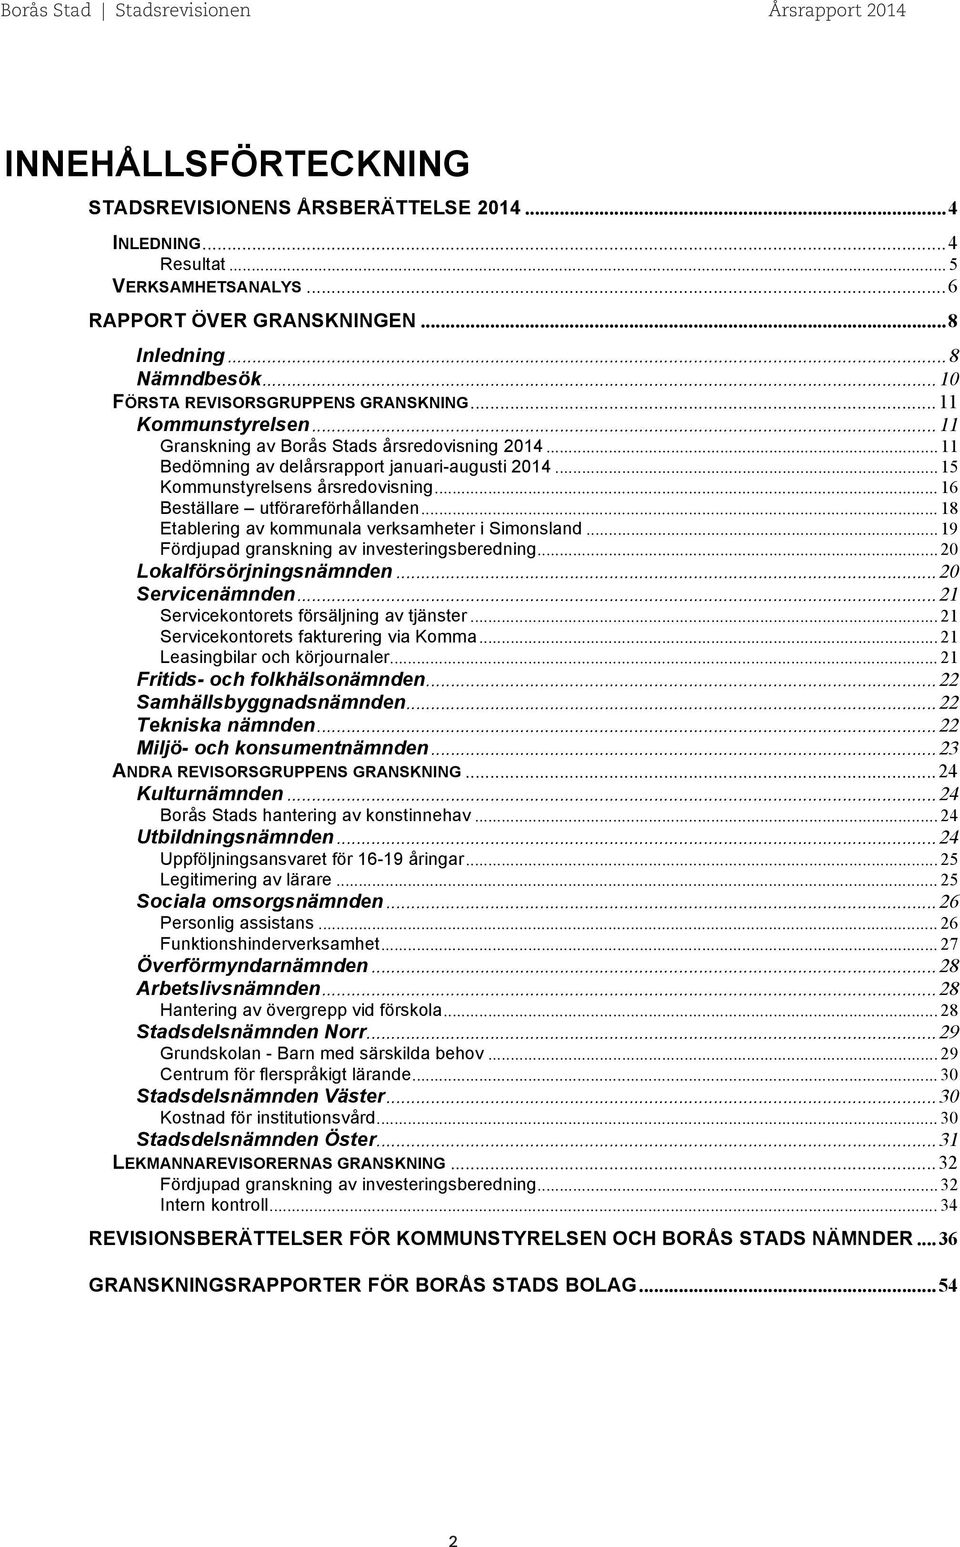 .. 15 Kommunstyrelsens årsredovisning... 16 Beställare utförareförhållanden... 18 Etablering av kommunala verksamheter i Simonsland... 19 Fördjupad granskning av investeringsberedning.